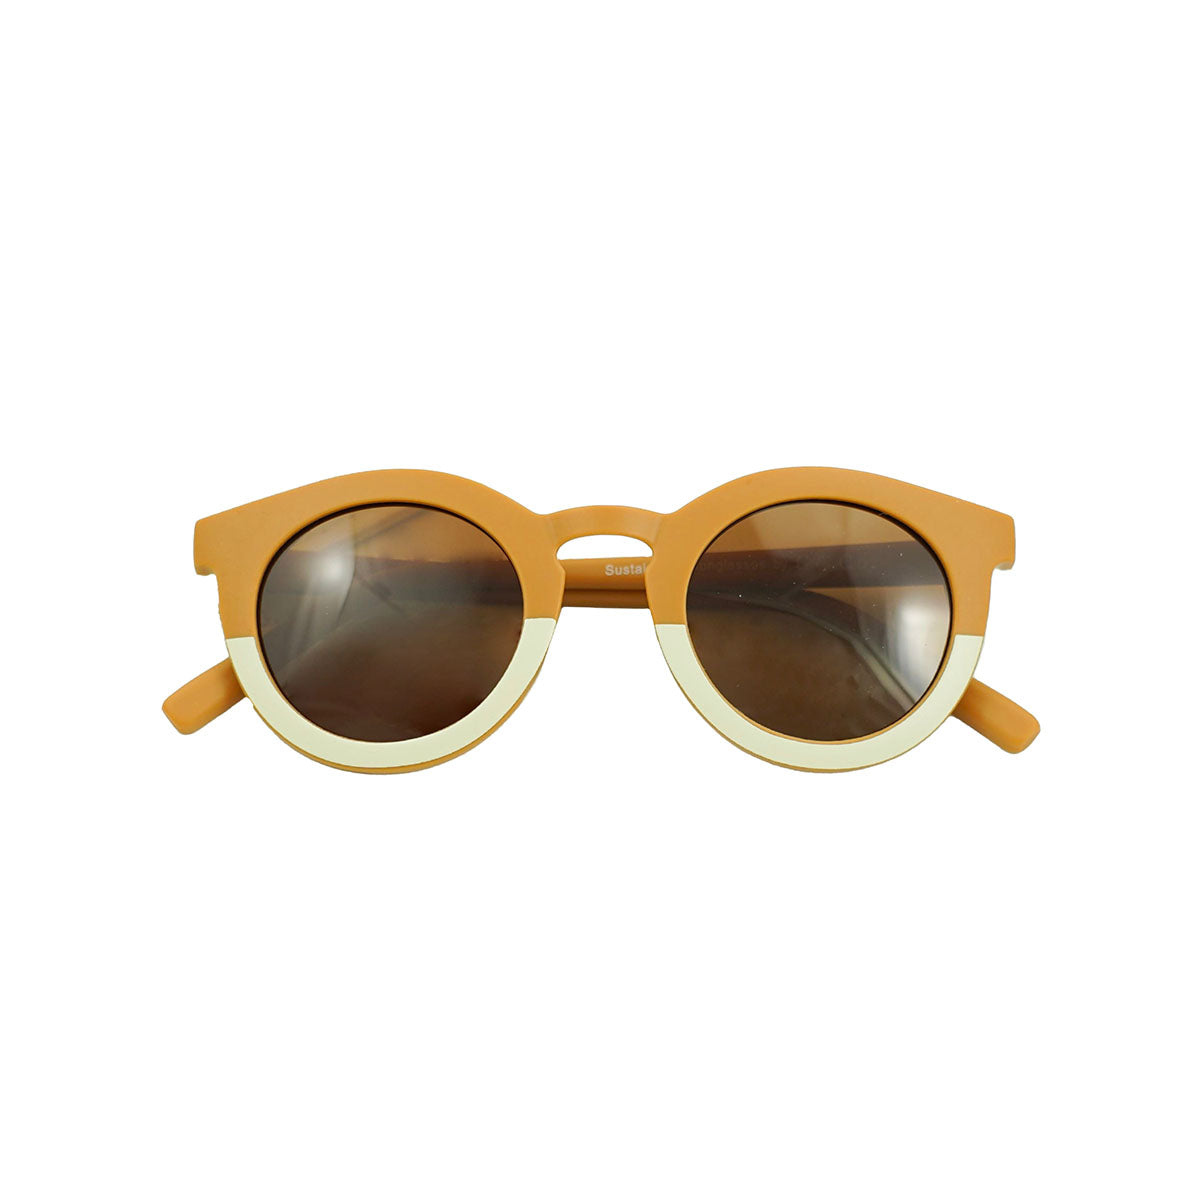 De Grech & co. zonnebril classic adult in de kleur buff is de perfecte keuze voor trendy en modebewuste moeders en hun mini-me’s. De zonnebril is namelijk ook beschikbaar voor kinderen! VanZus